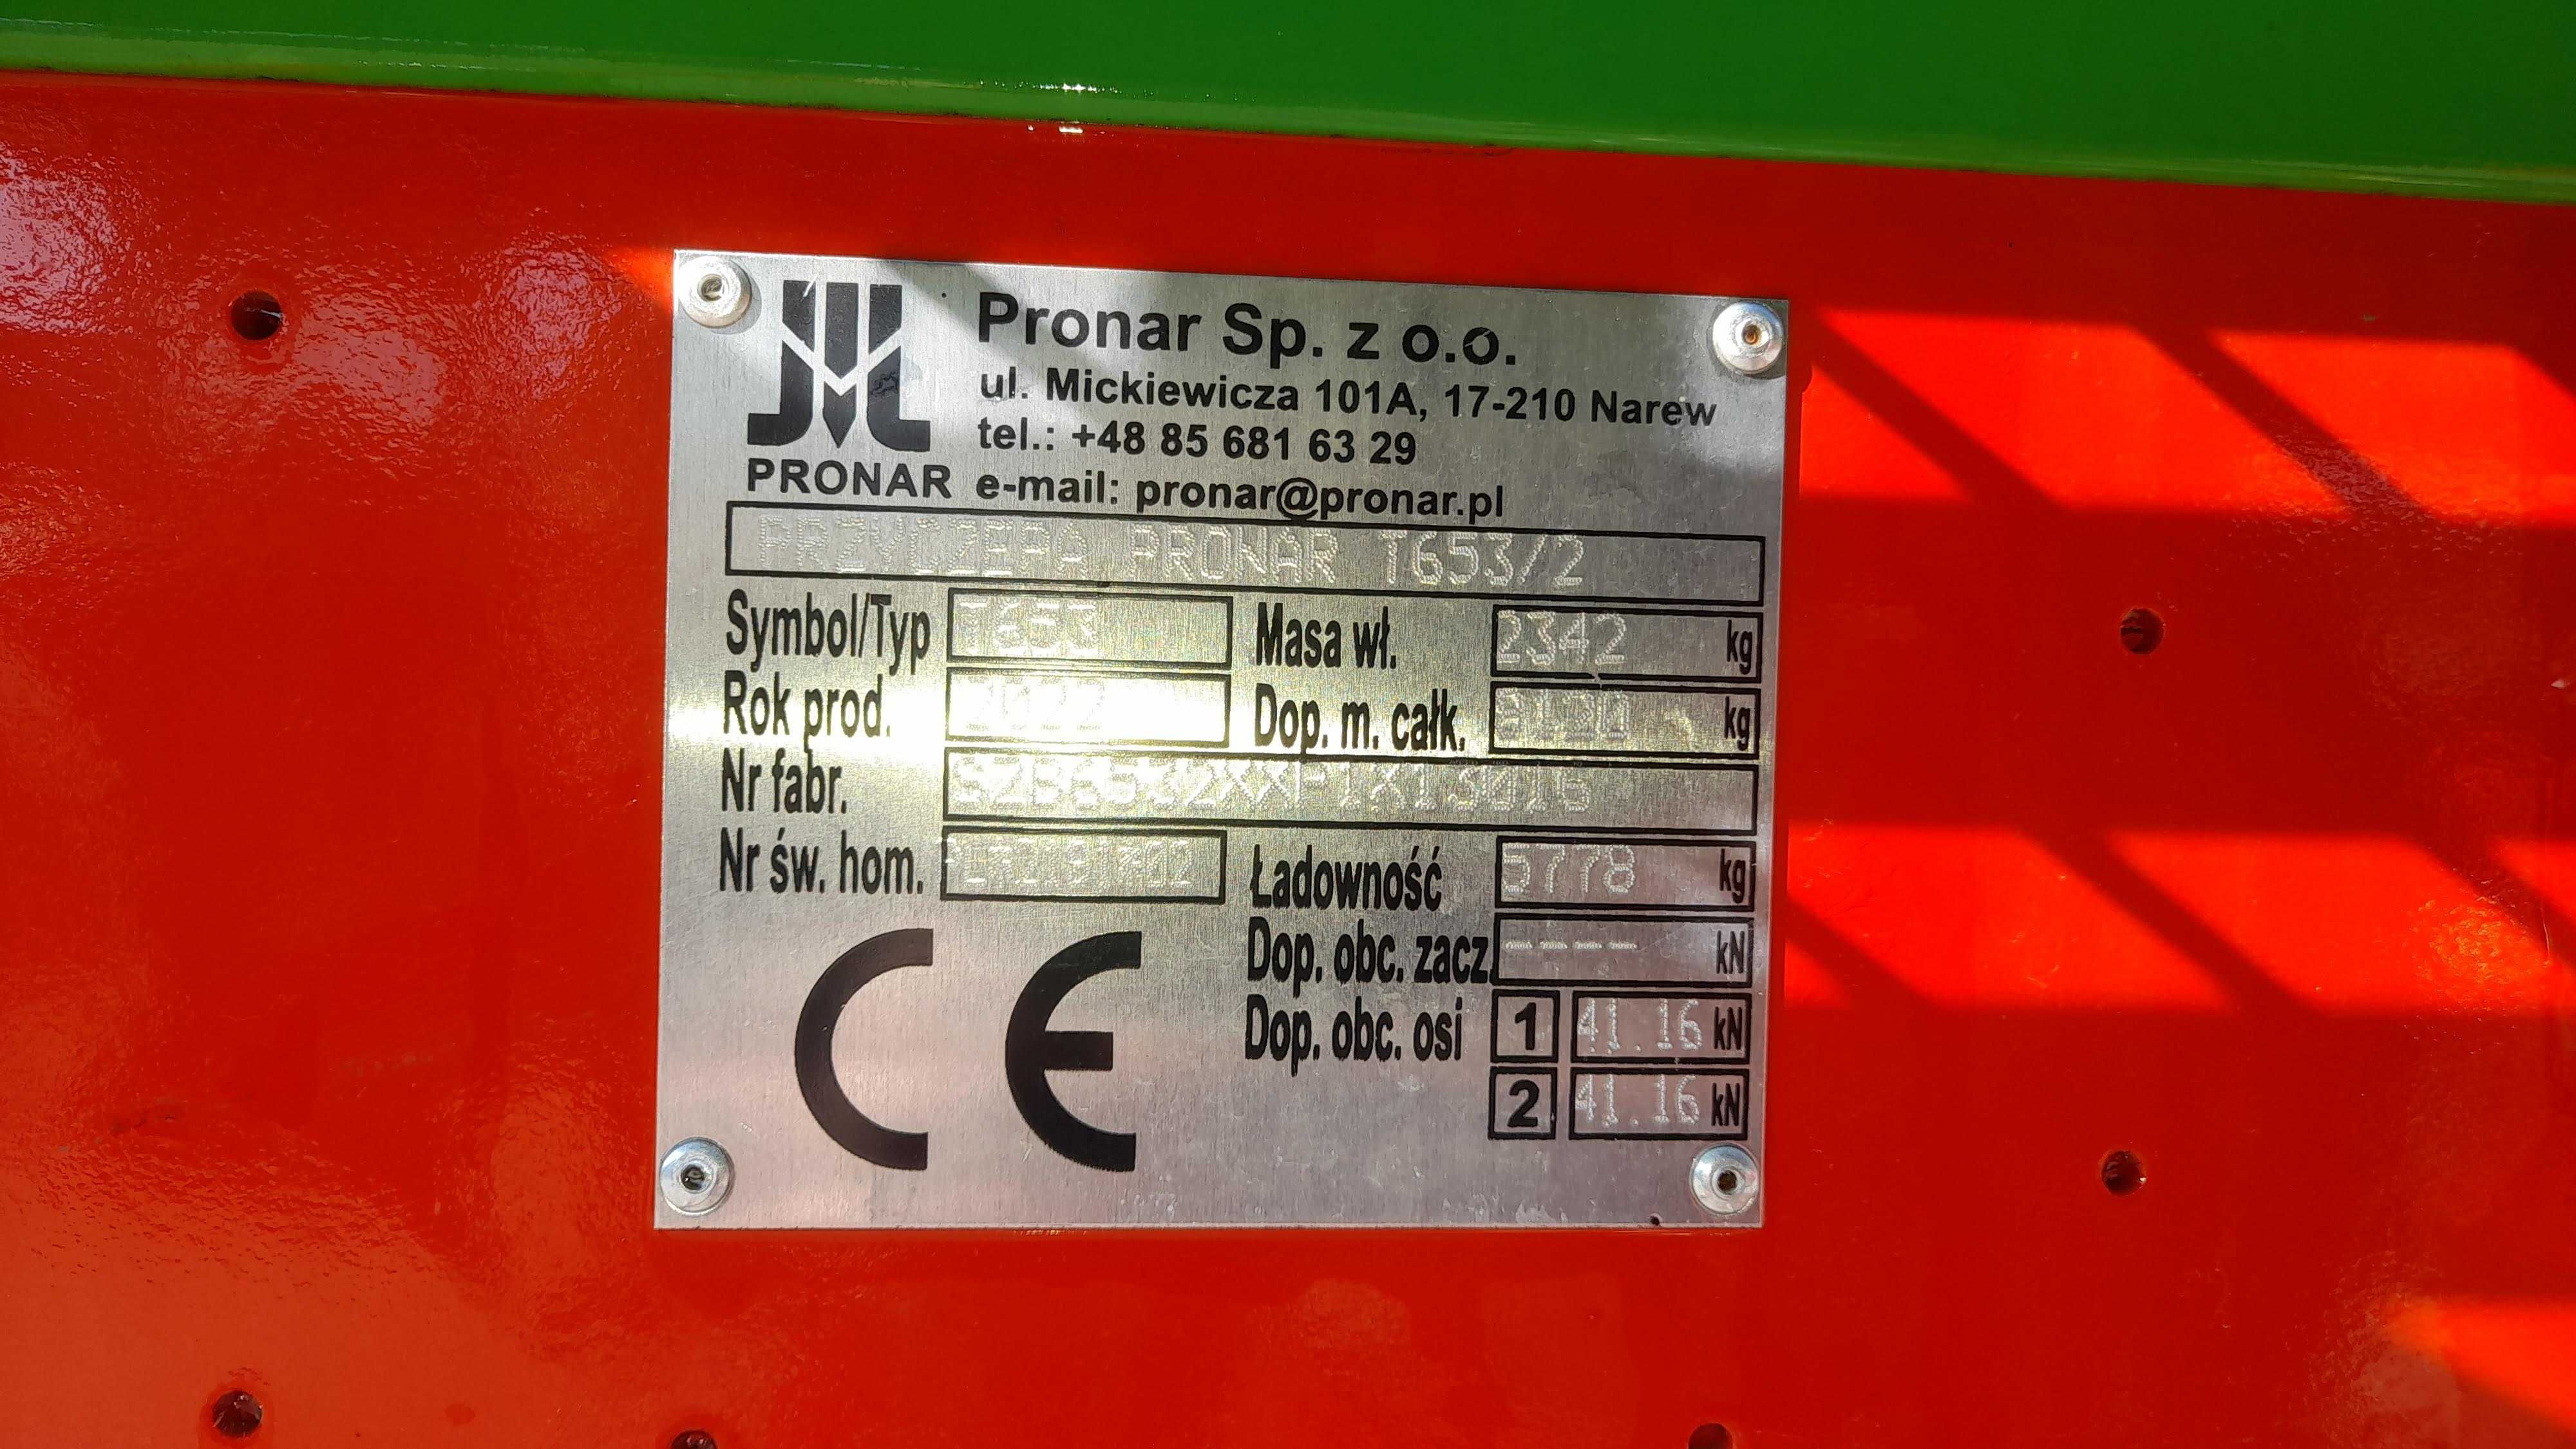 Przyczepa PRONAR 6 ton - T653/2 fabrycznie nowa - cena PROMOCYJNA!!!